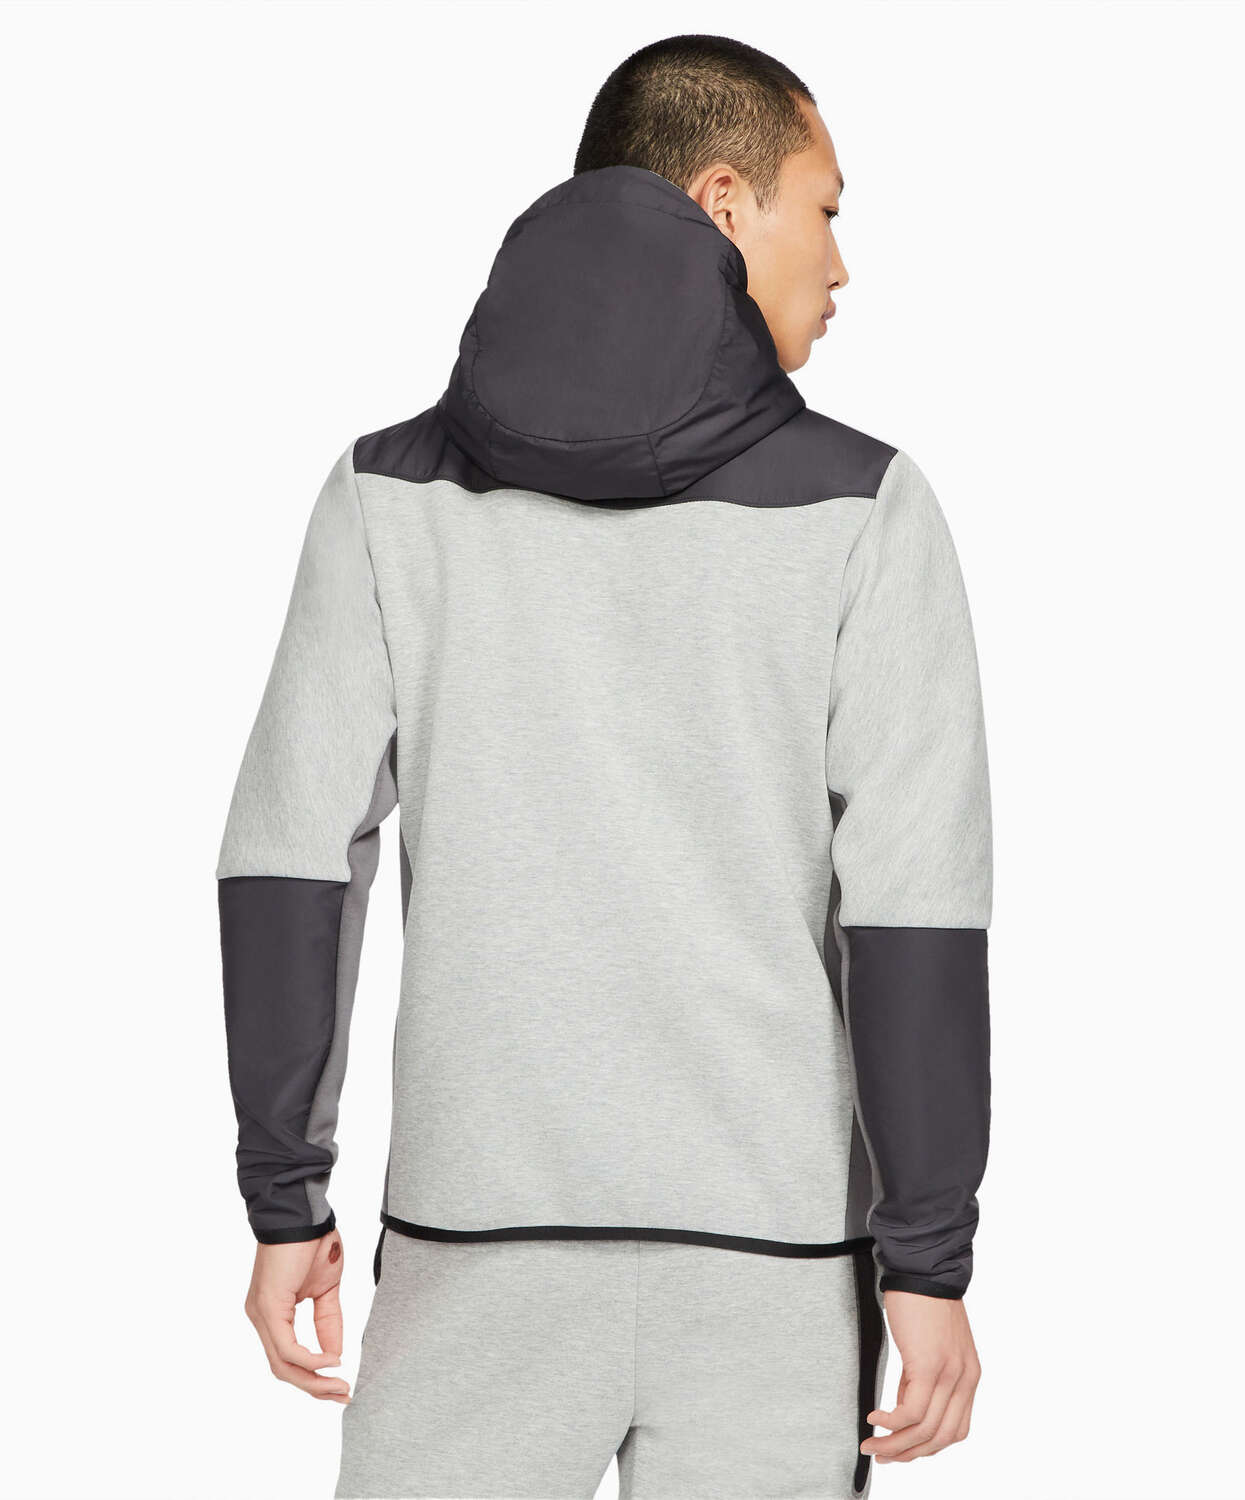 Nike Sportswear Tech Fleece Woven Full-Zip Men's Hoodie Gray CZ9903-063